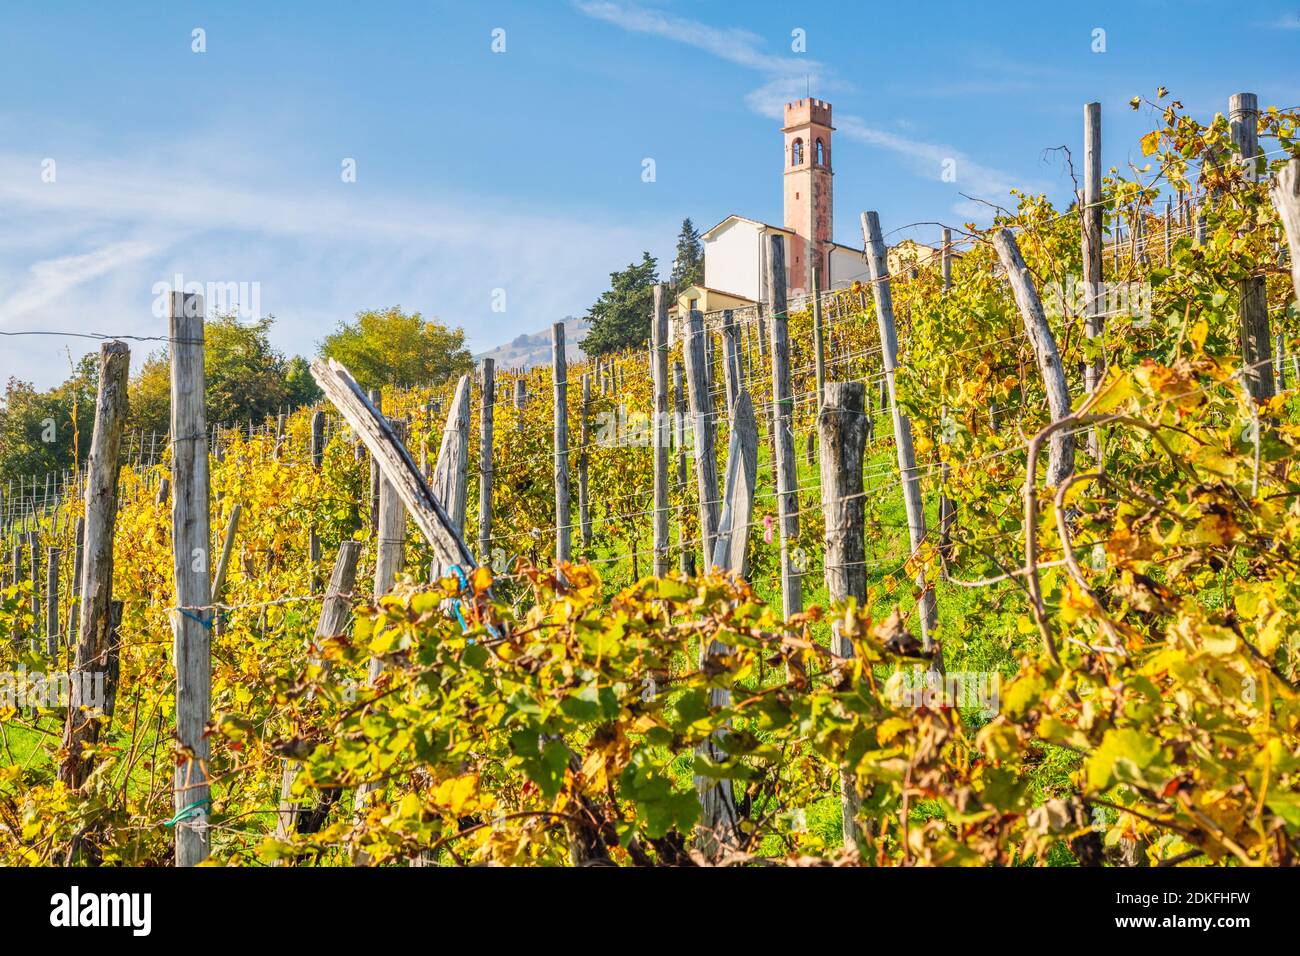 Das Oratorium der seligen Jungfrau des Leidens auf dem Hügel von Combai, zwischen den Weinbergen im Herbst, Miane, Treviso, Italien, Europa Stockfoto